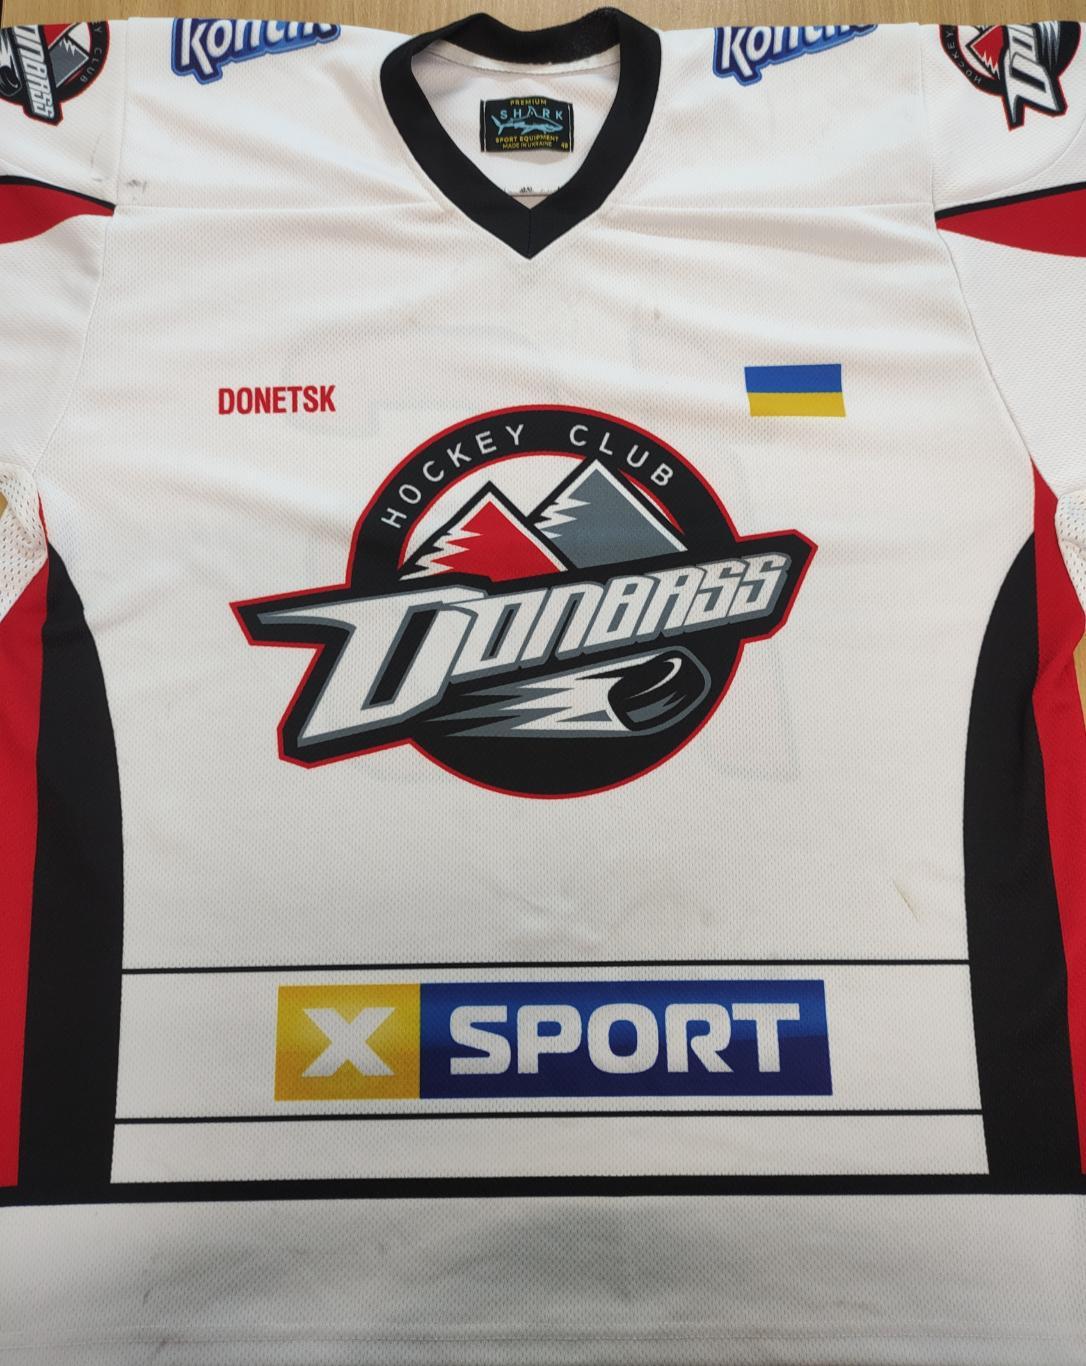 Хоккейный свитер (хоккейка, хоккейная майка, джерси) клуба Донбасс 1